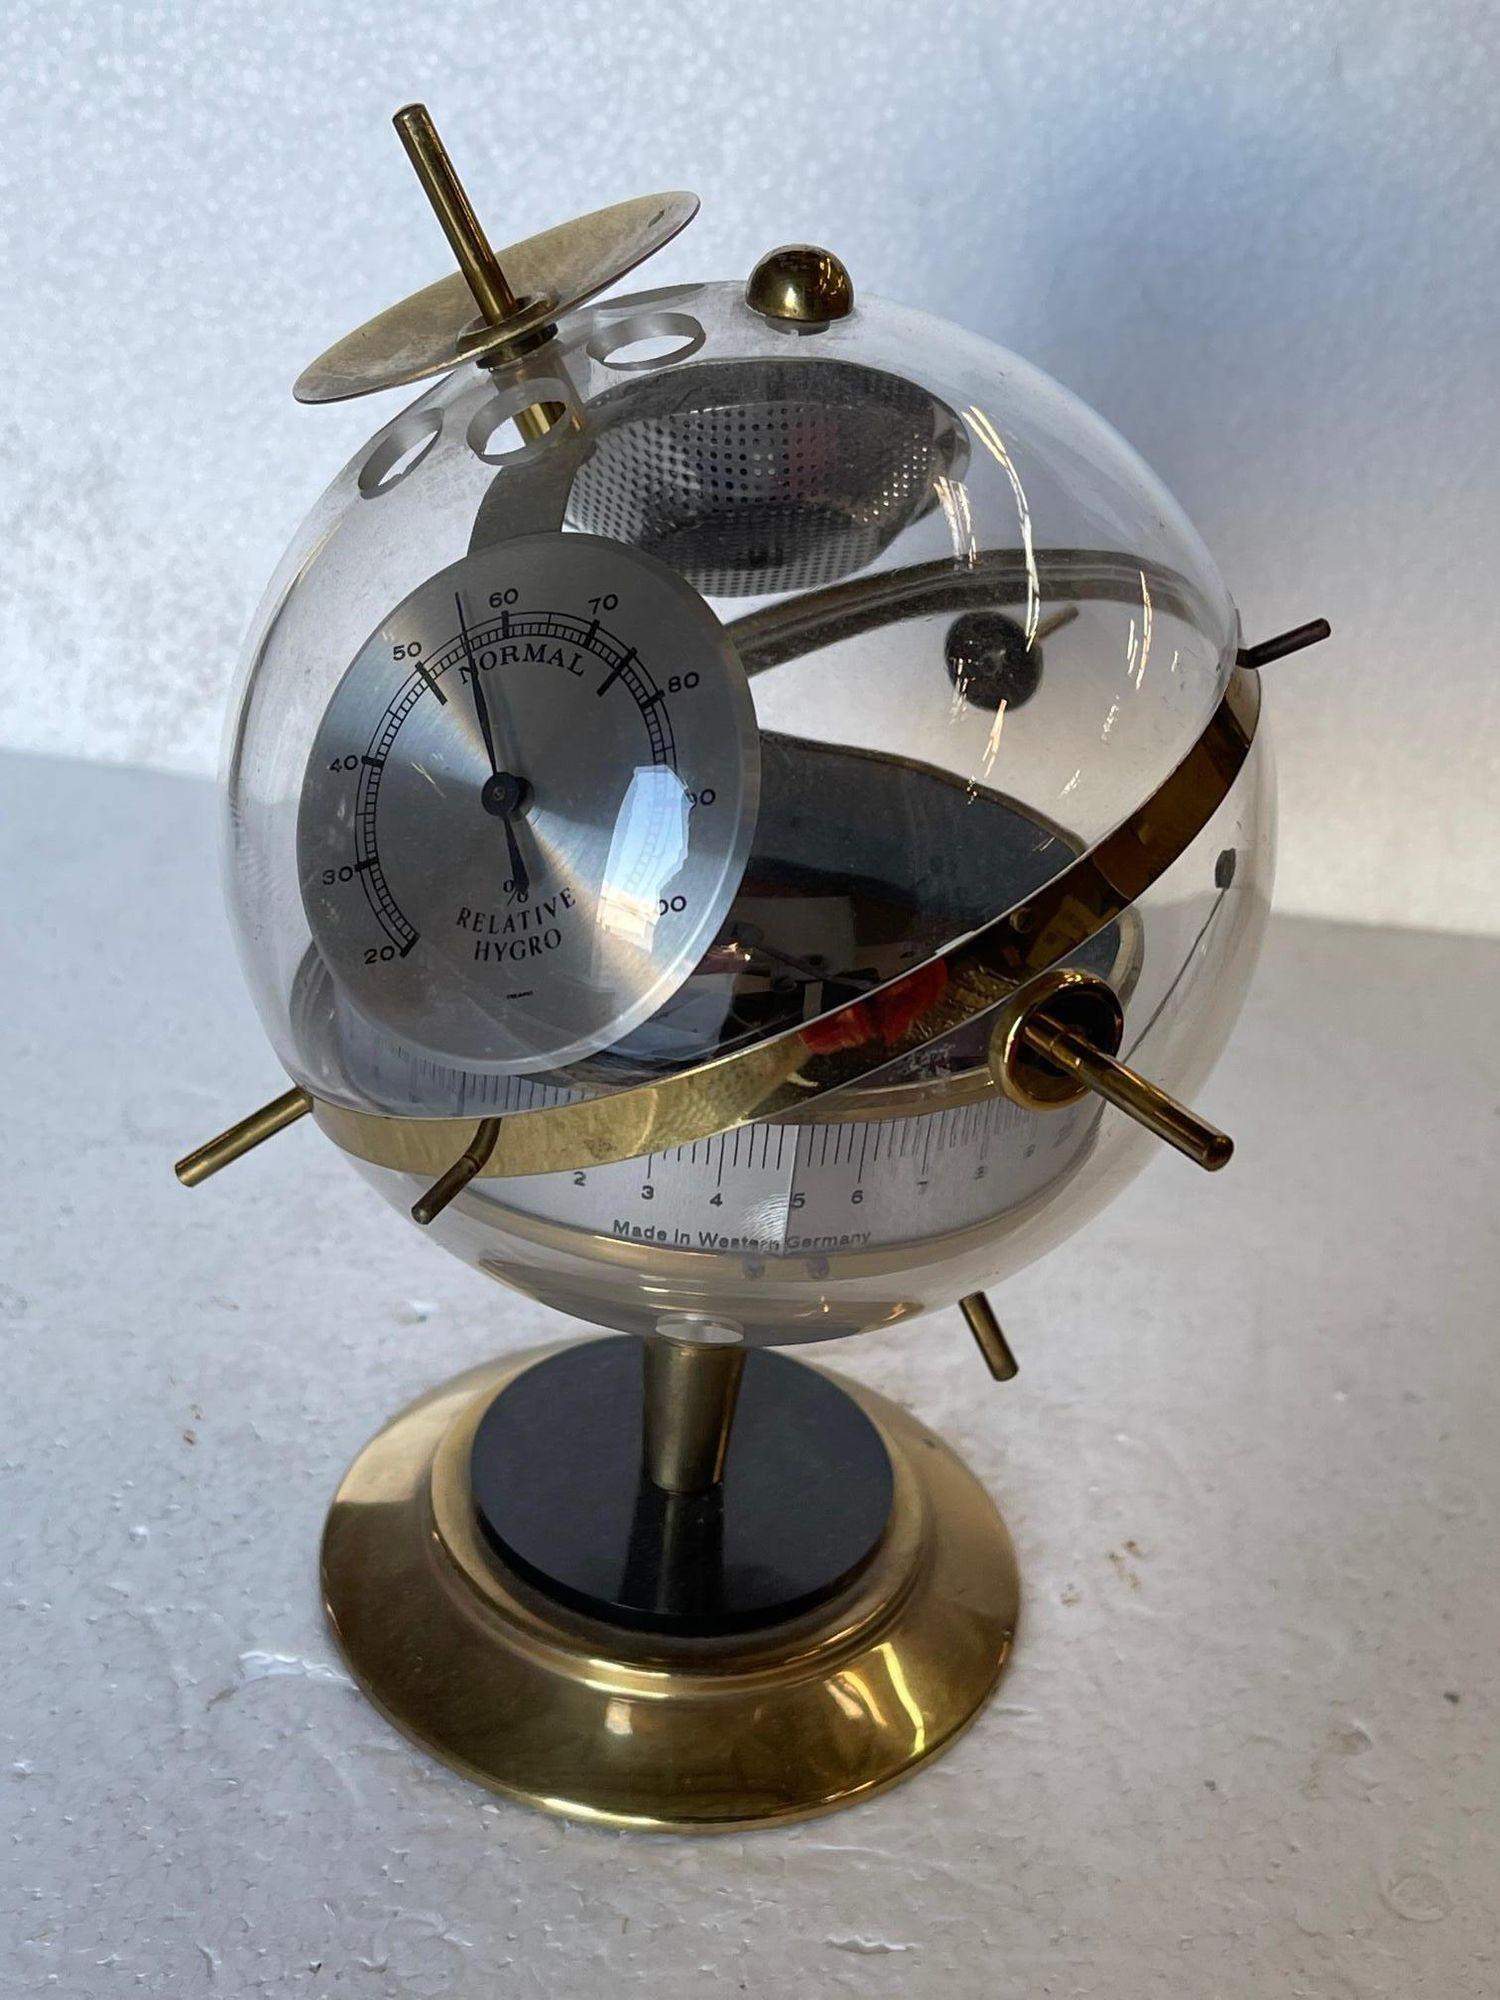 Mid Century German Made Acryl und Messing Wetterstation Relative Hygrometer diese Kugel mit Barometer Hygrometer & Thermometer.

Westdeutschland, um 1960